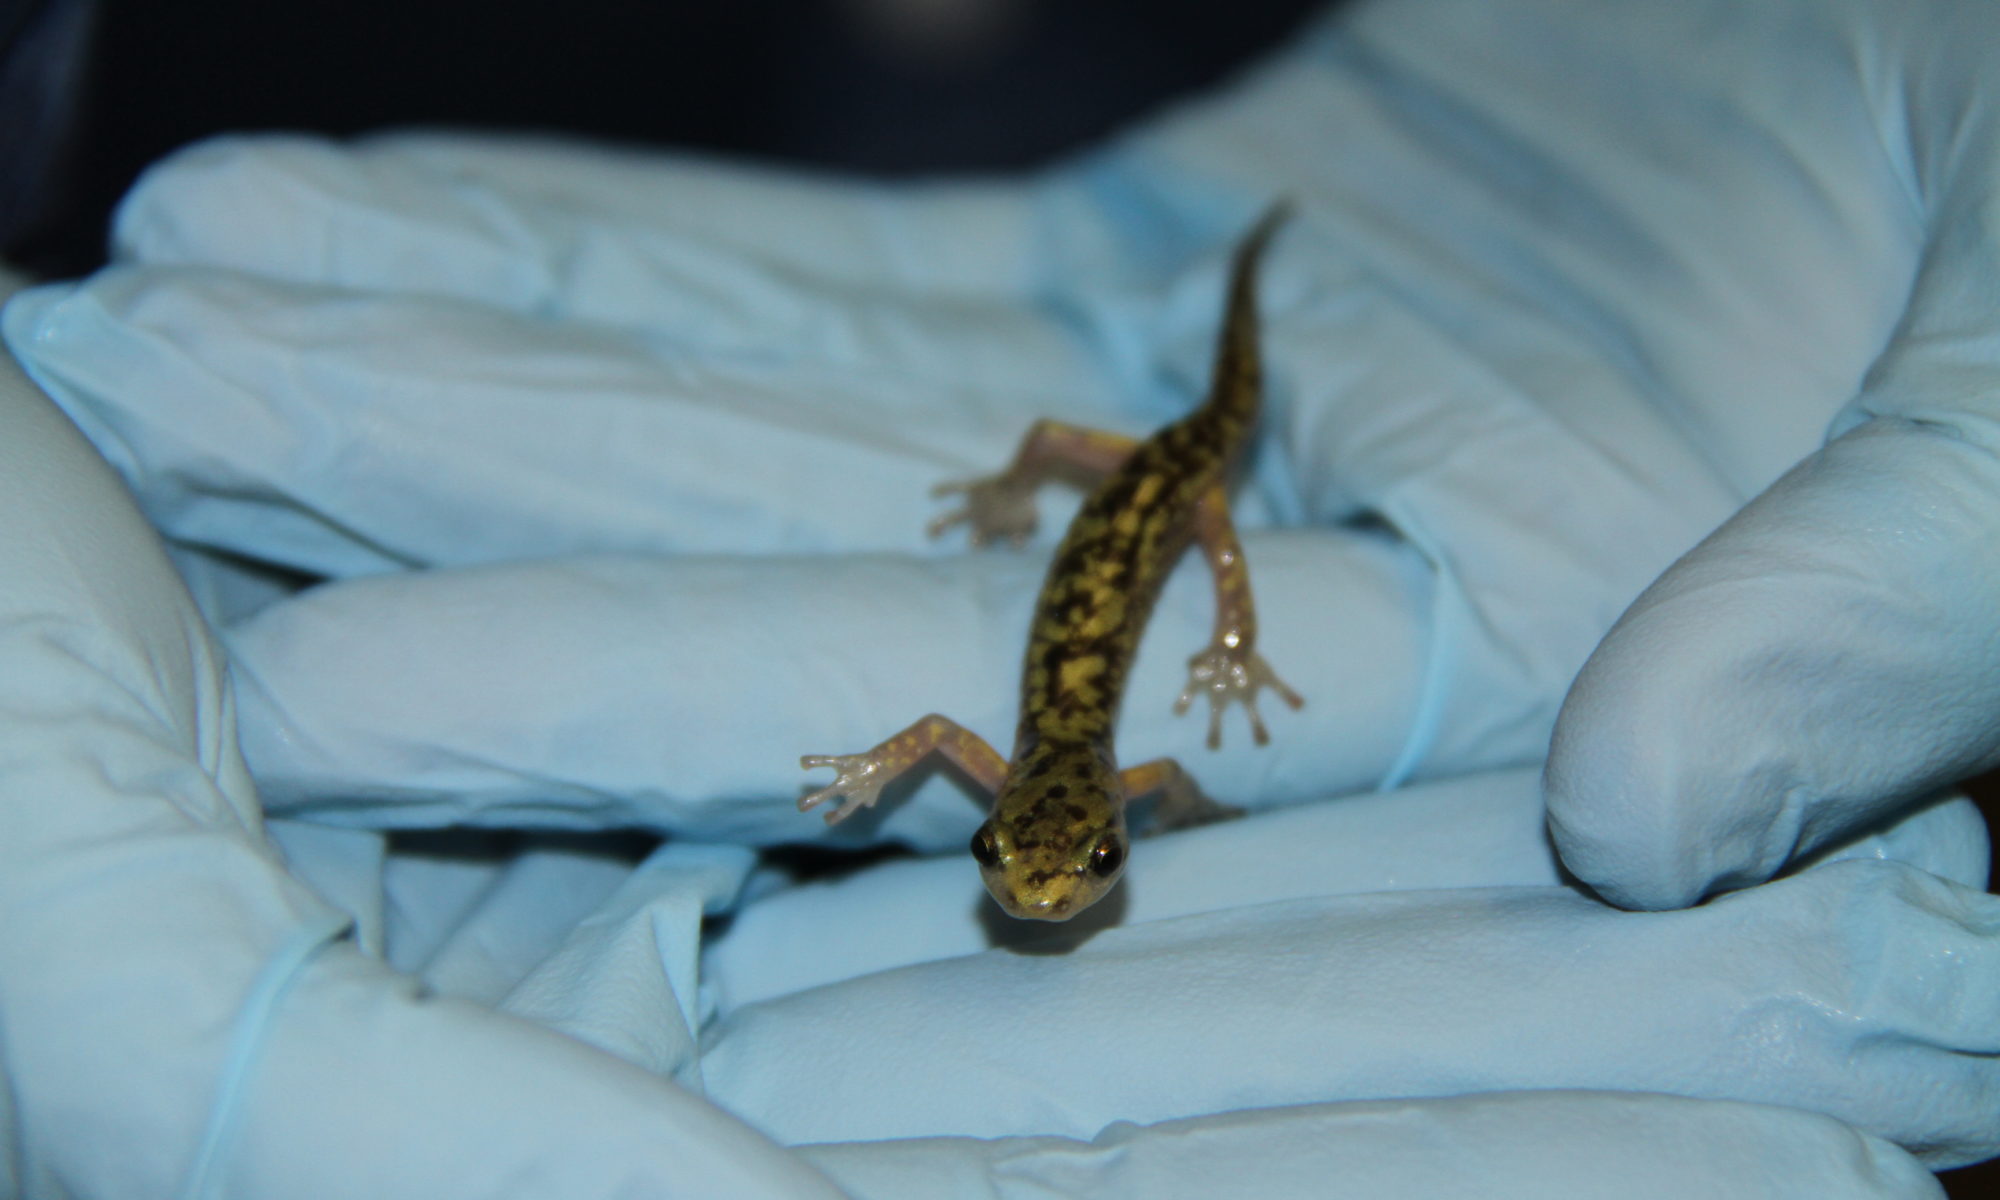 A salamander walks across gloved hands.